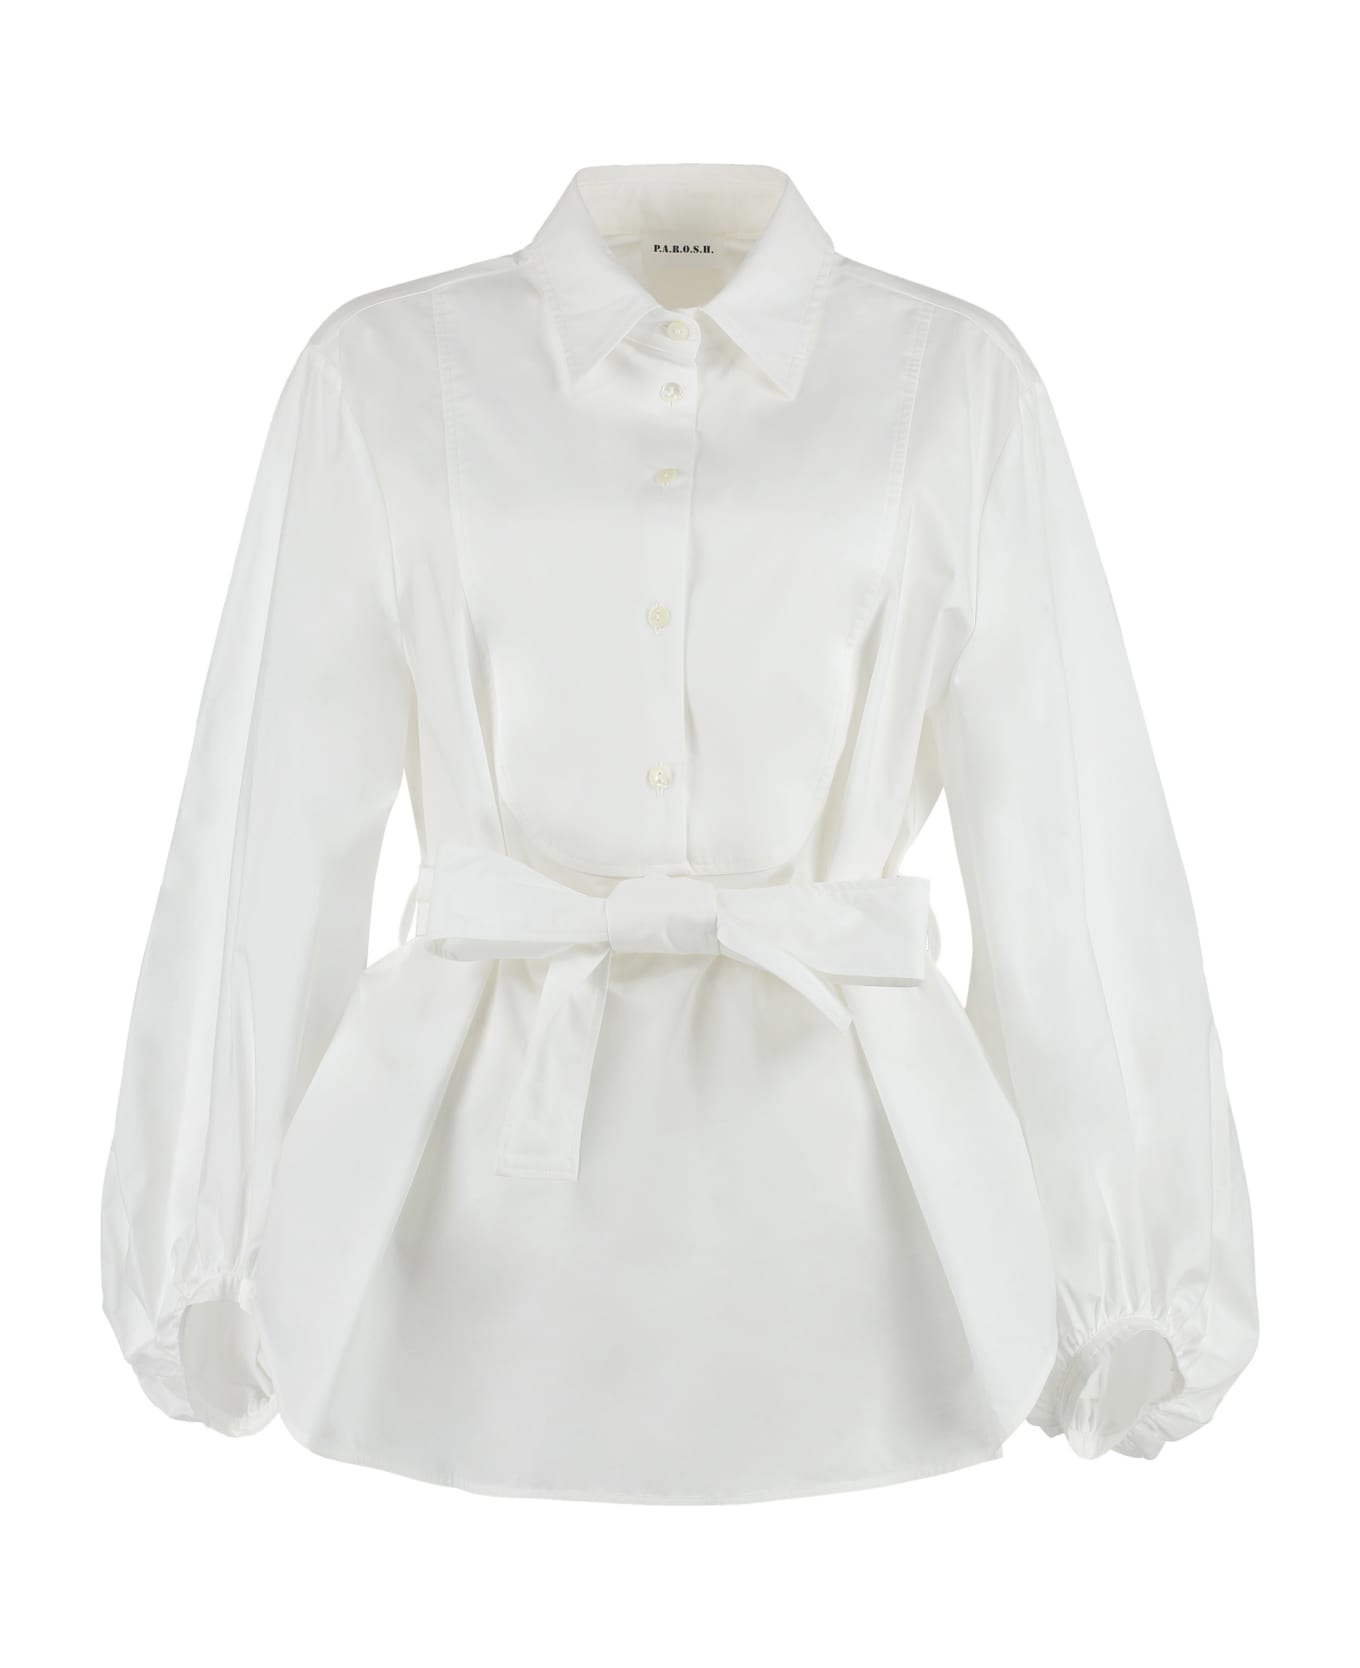 Parosh Cotton Shirt - White シャツ